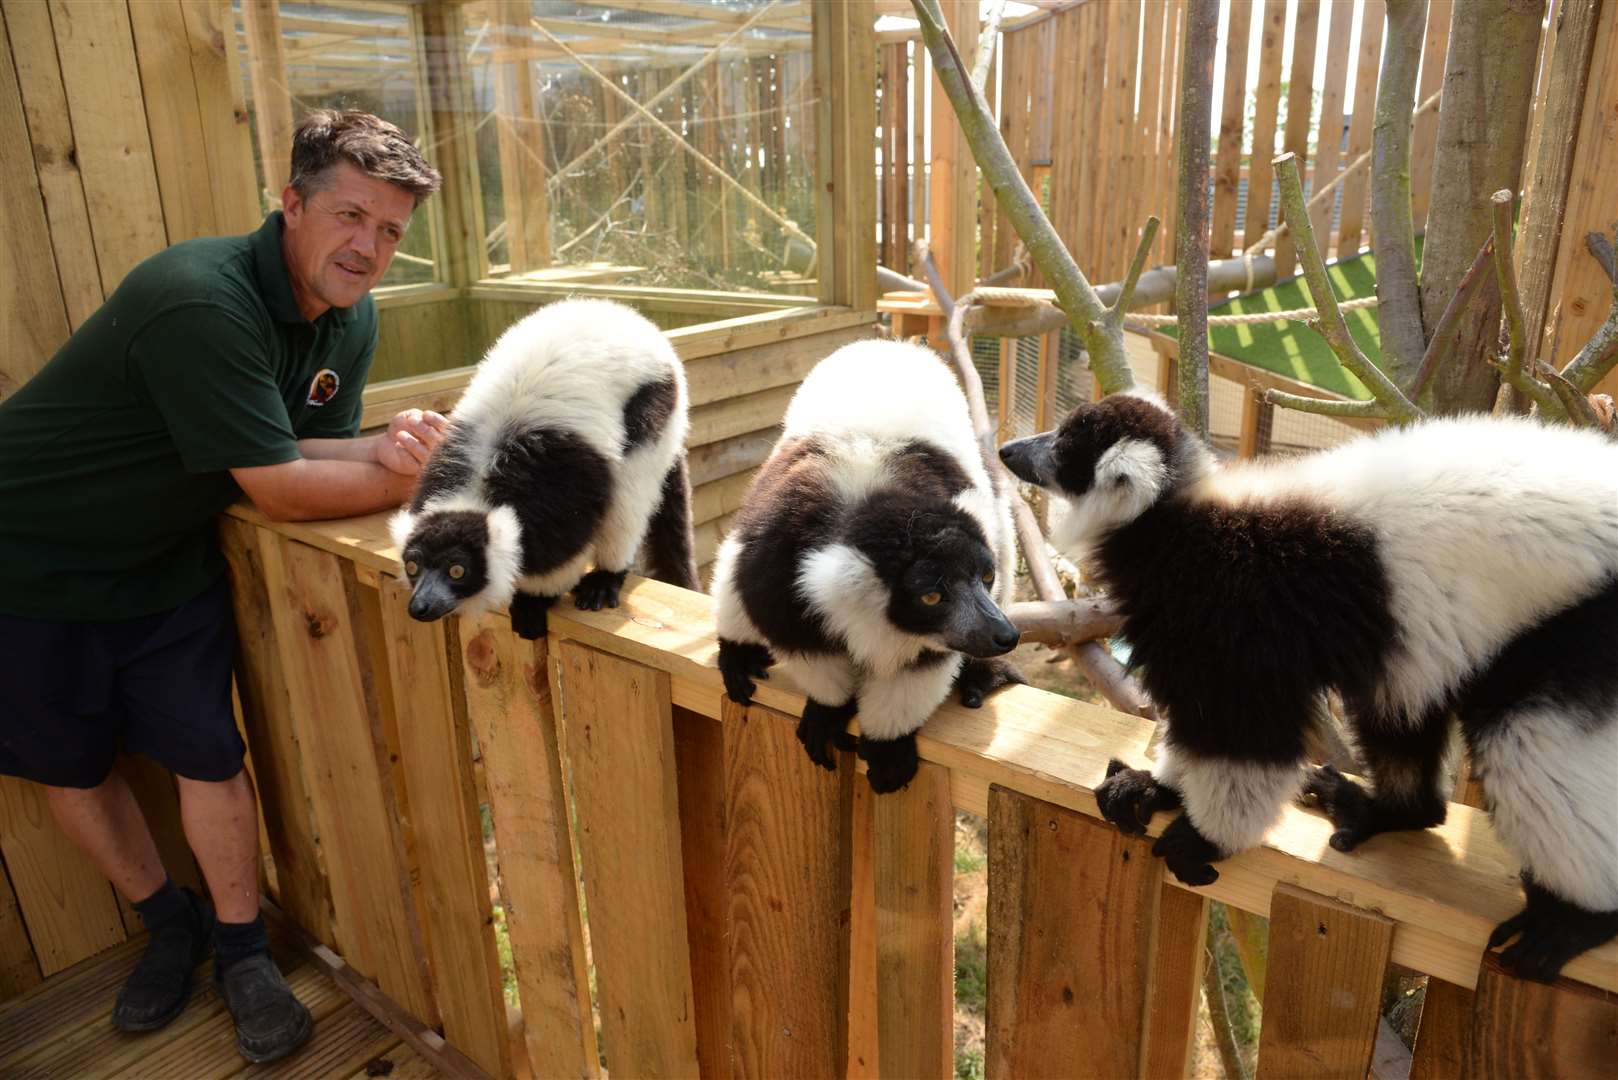 Lemurs in their enclosure at the Fenn Bell Inn